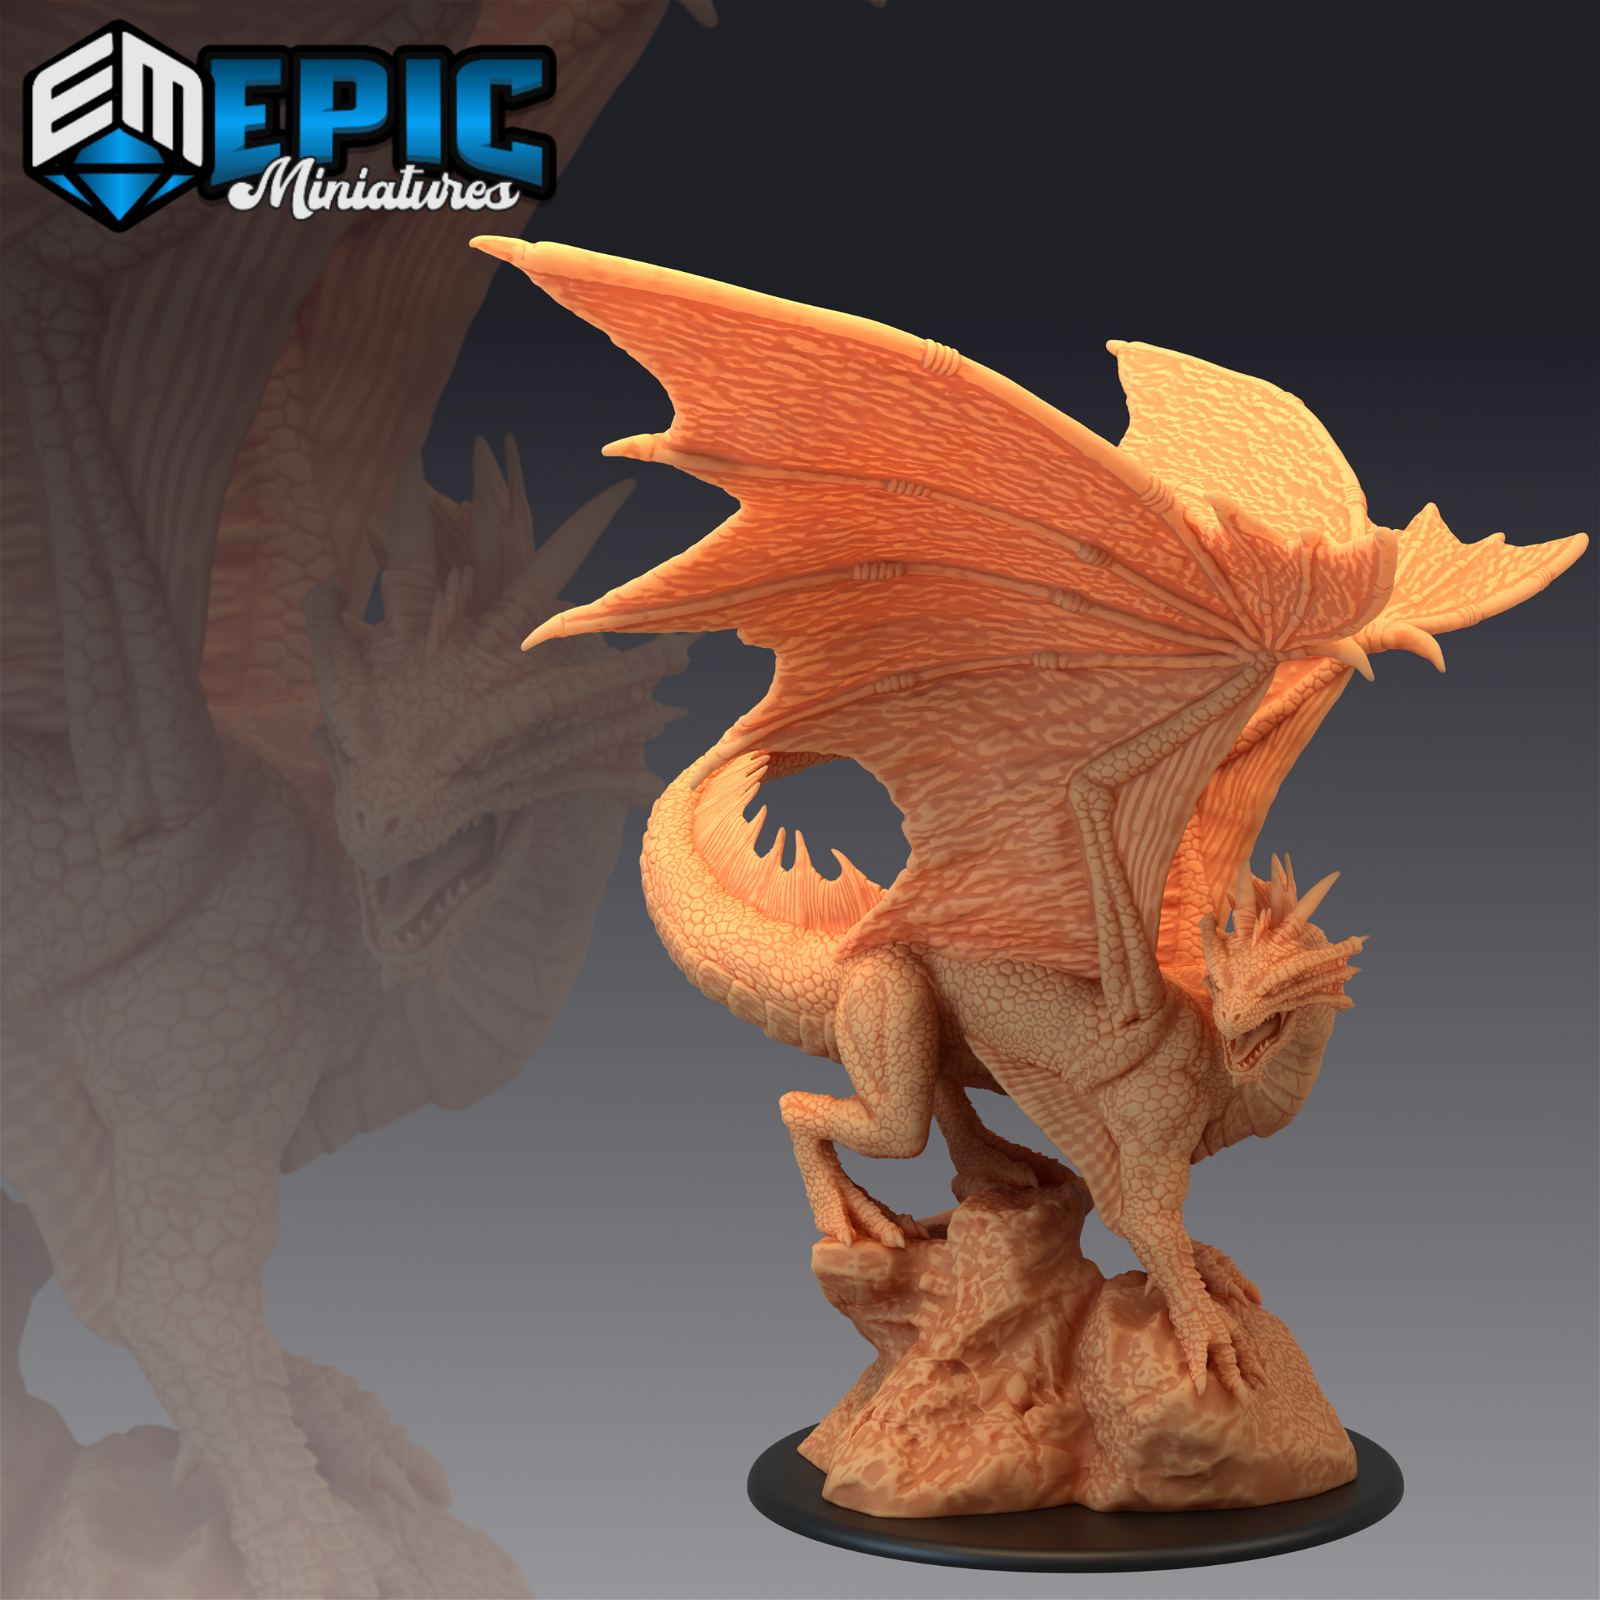 Bronze Dragon - The Printable Dragon